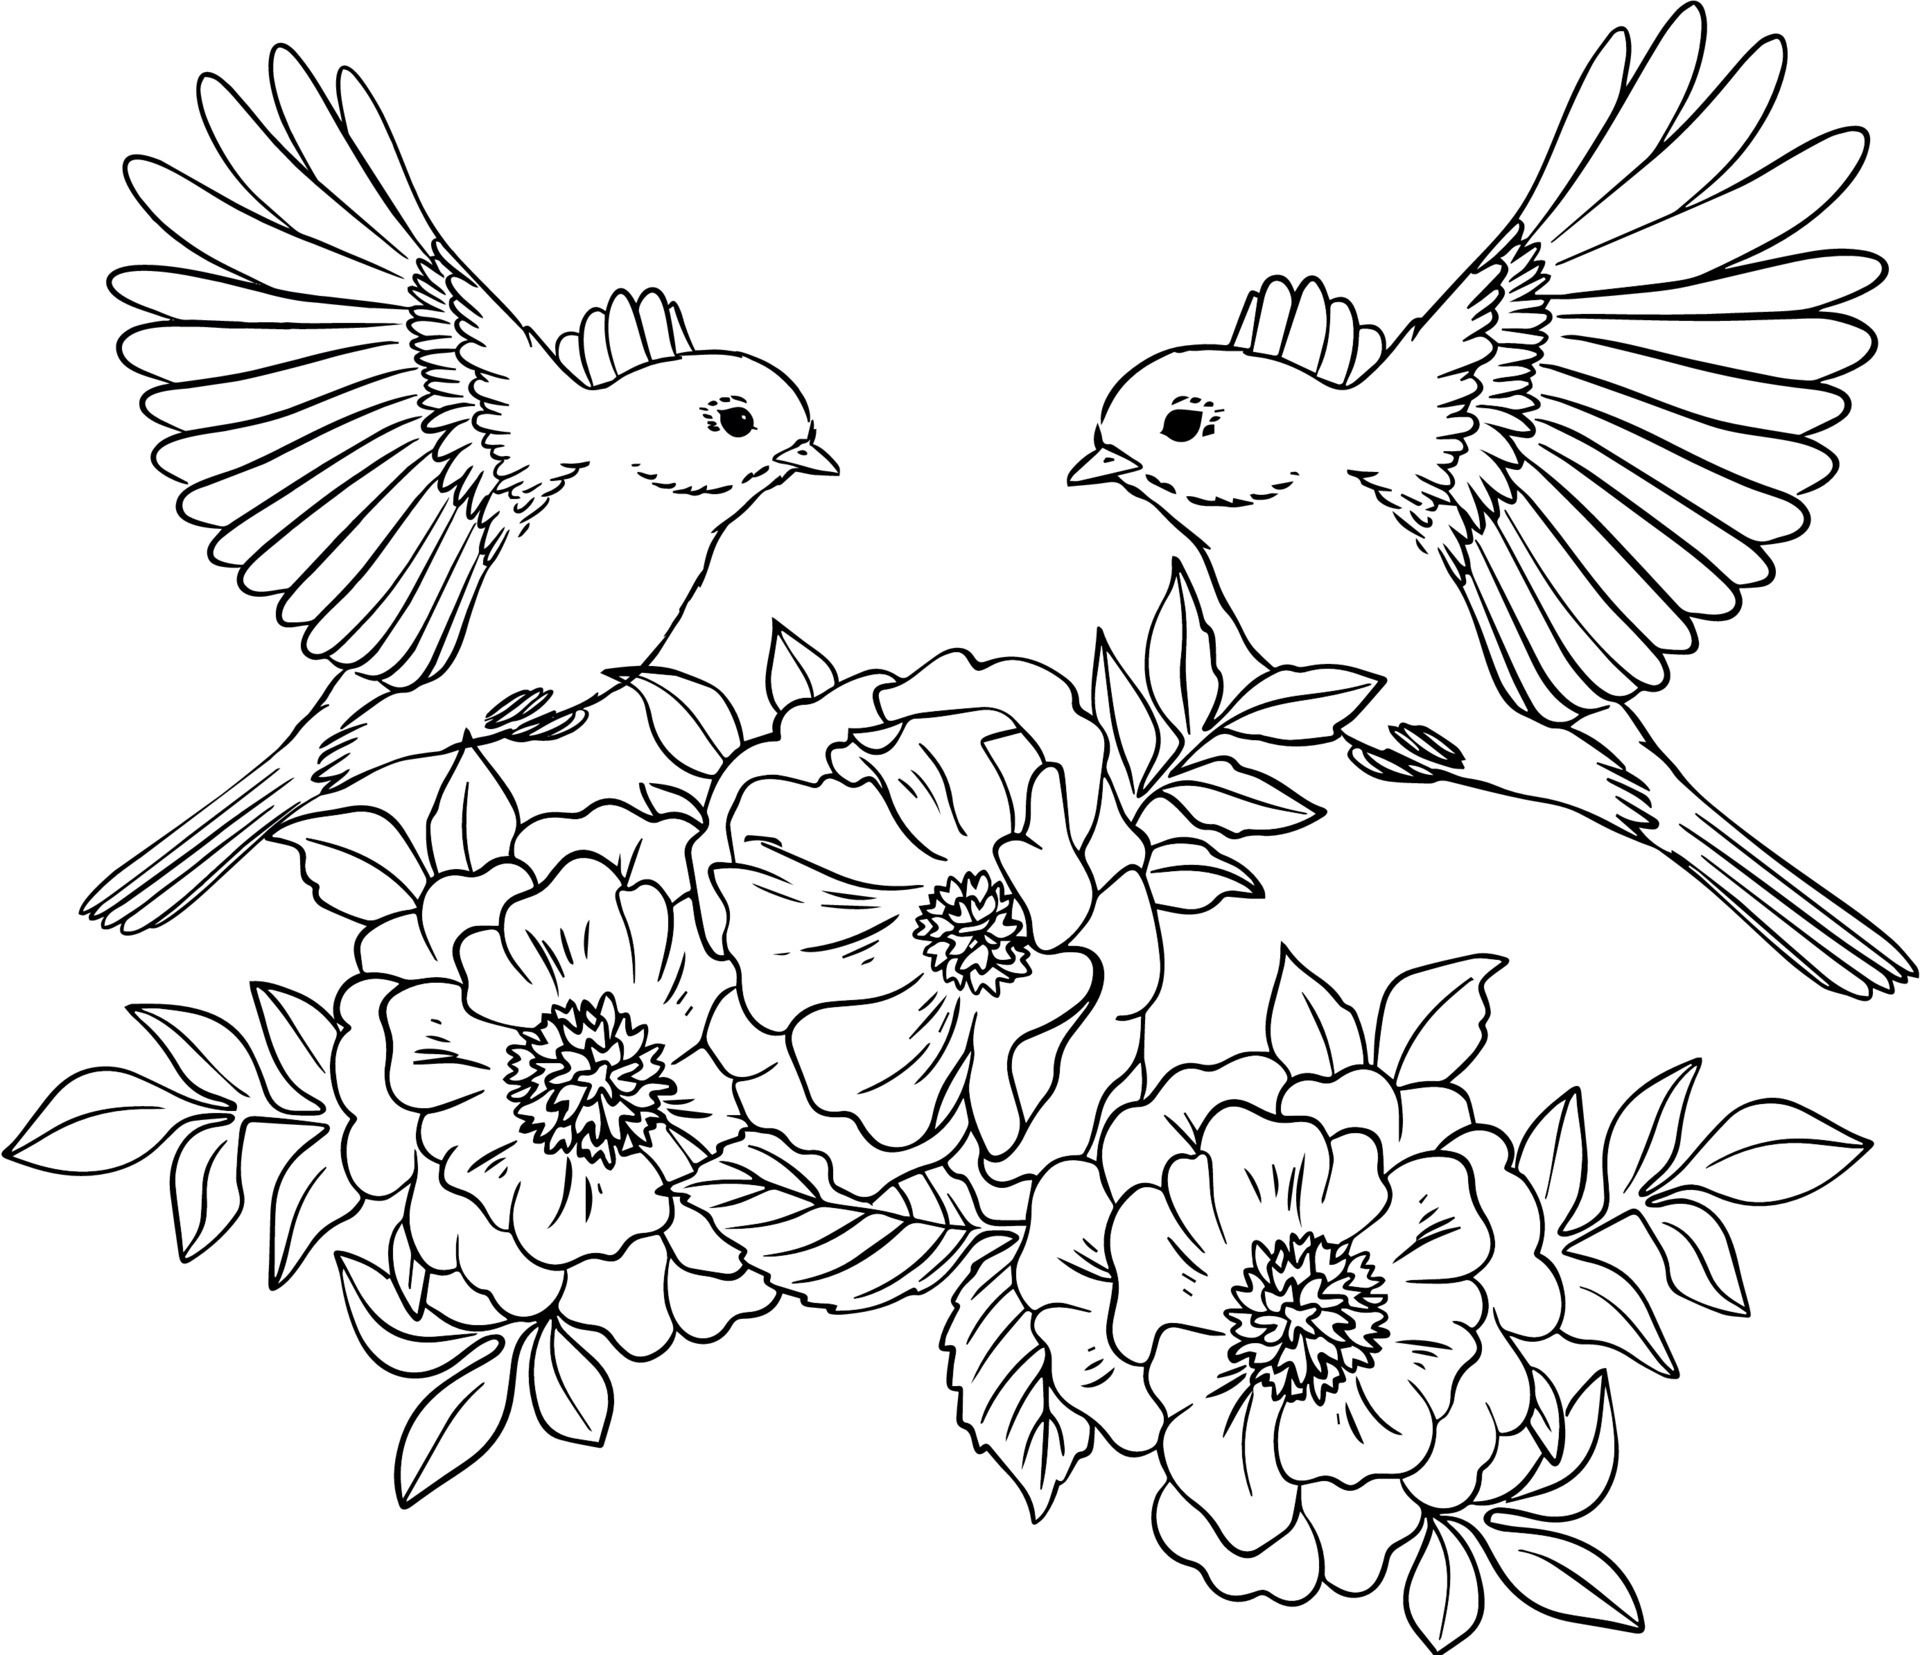 طرح خام گلدوزی دو پرنده روی گل ها